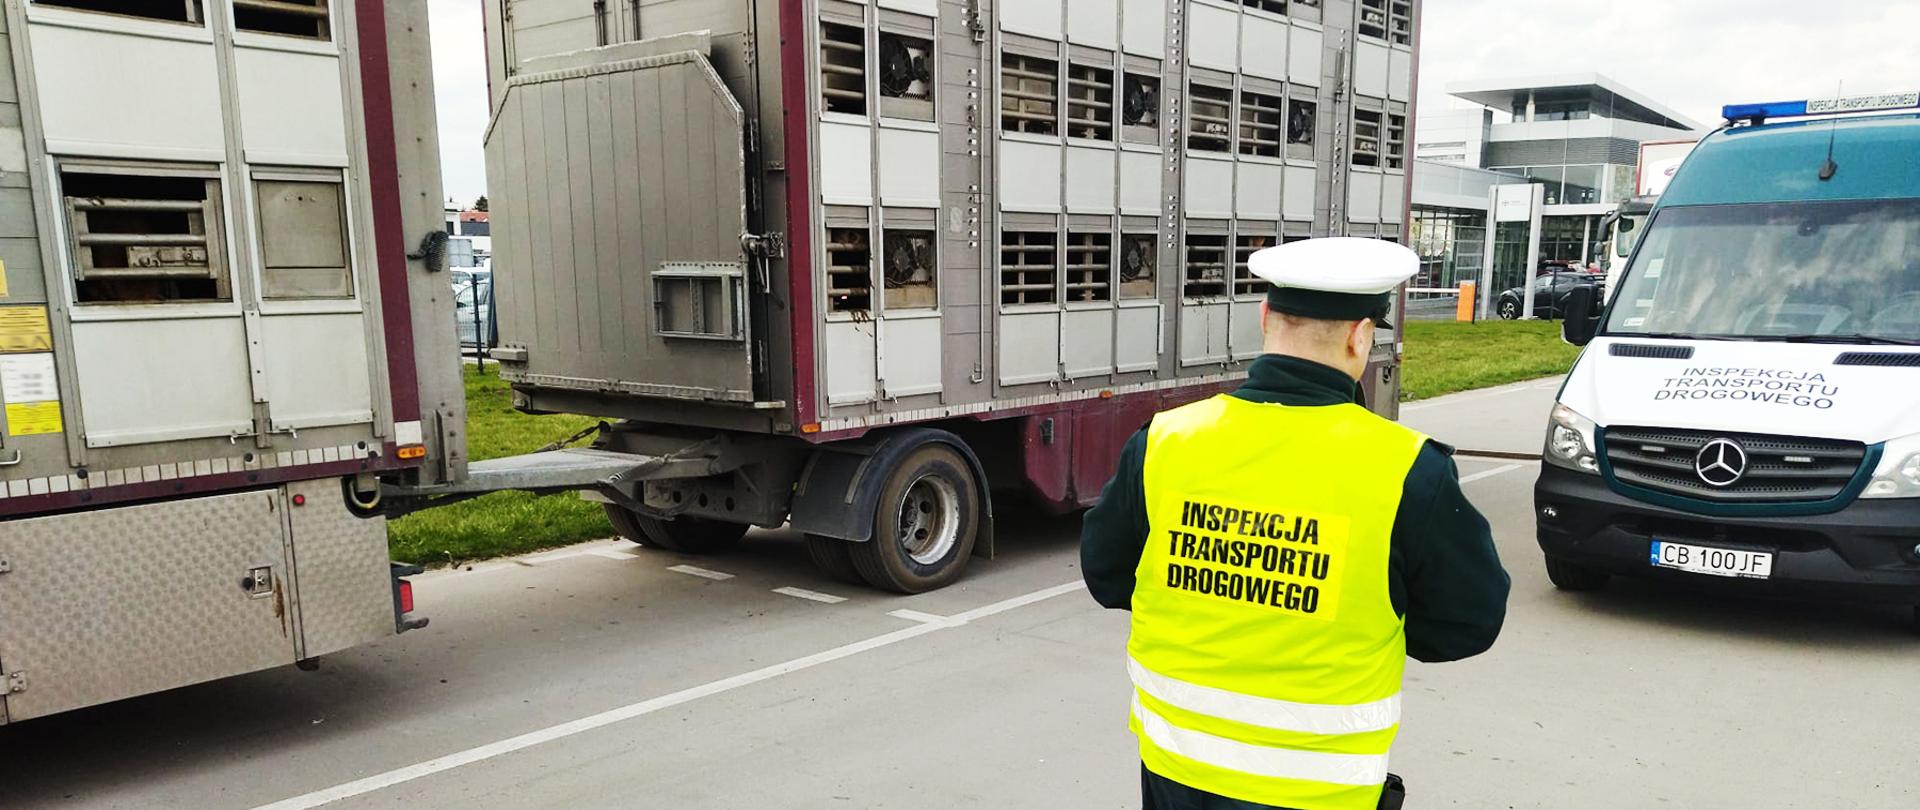 Jeden z pojazdów ciężarowych zatrzymanych przez inspektorów kujawsko-pomorskiej ITD
